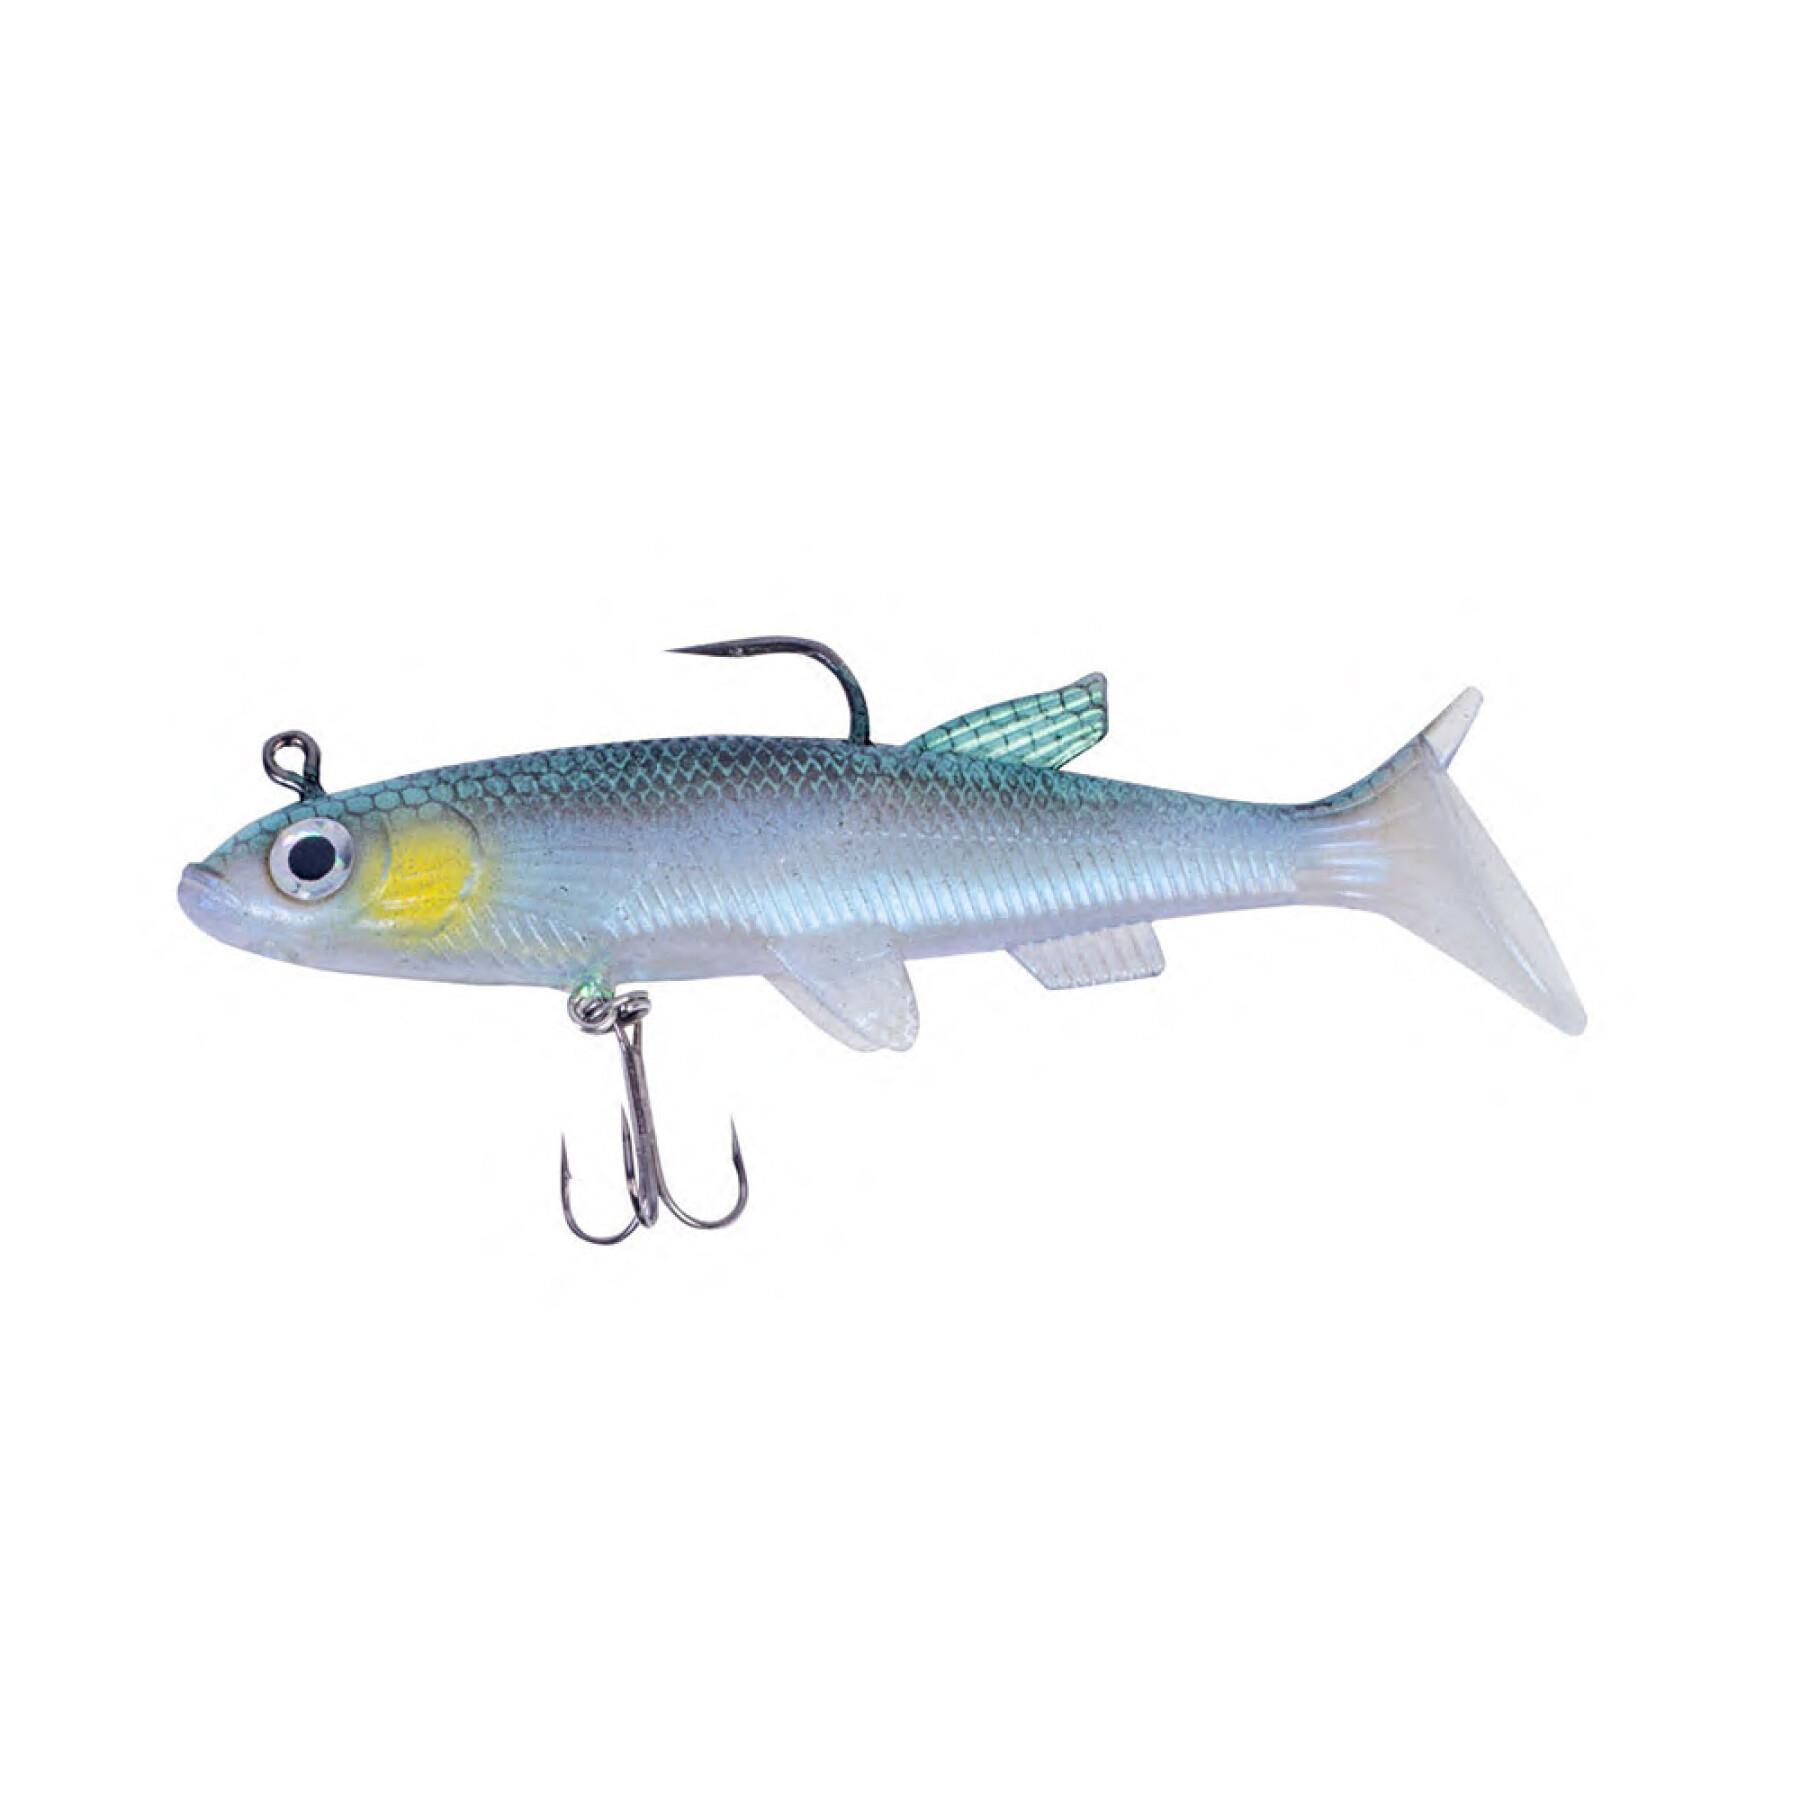 Lockbete Korum Snapper drone silverfish